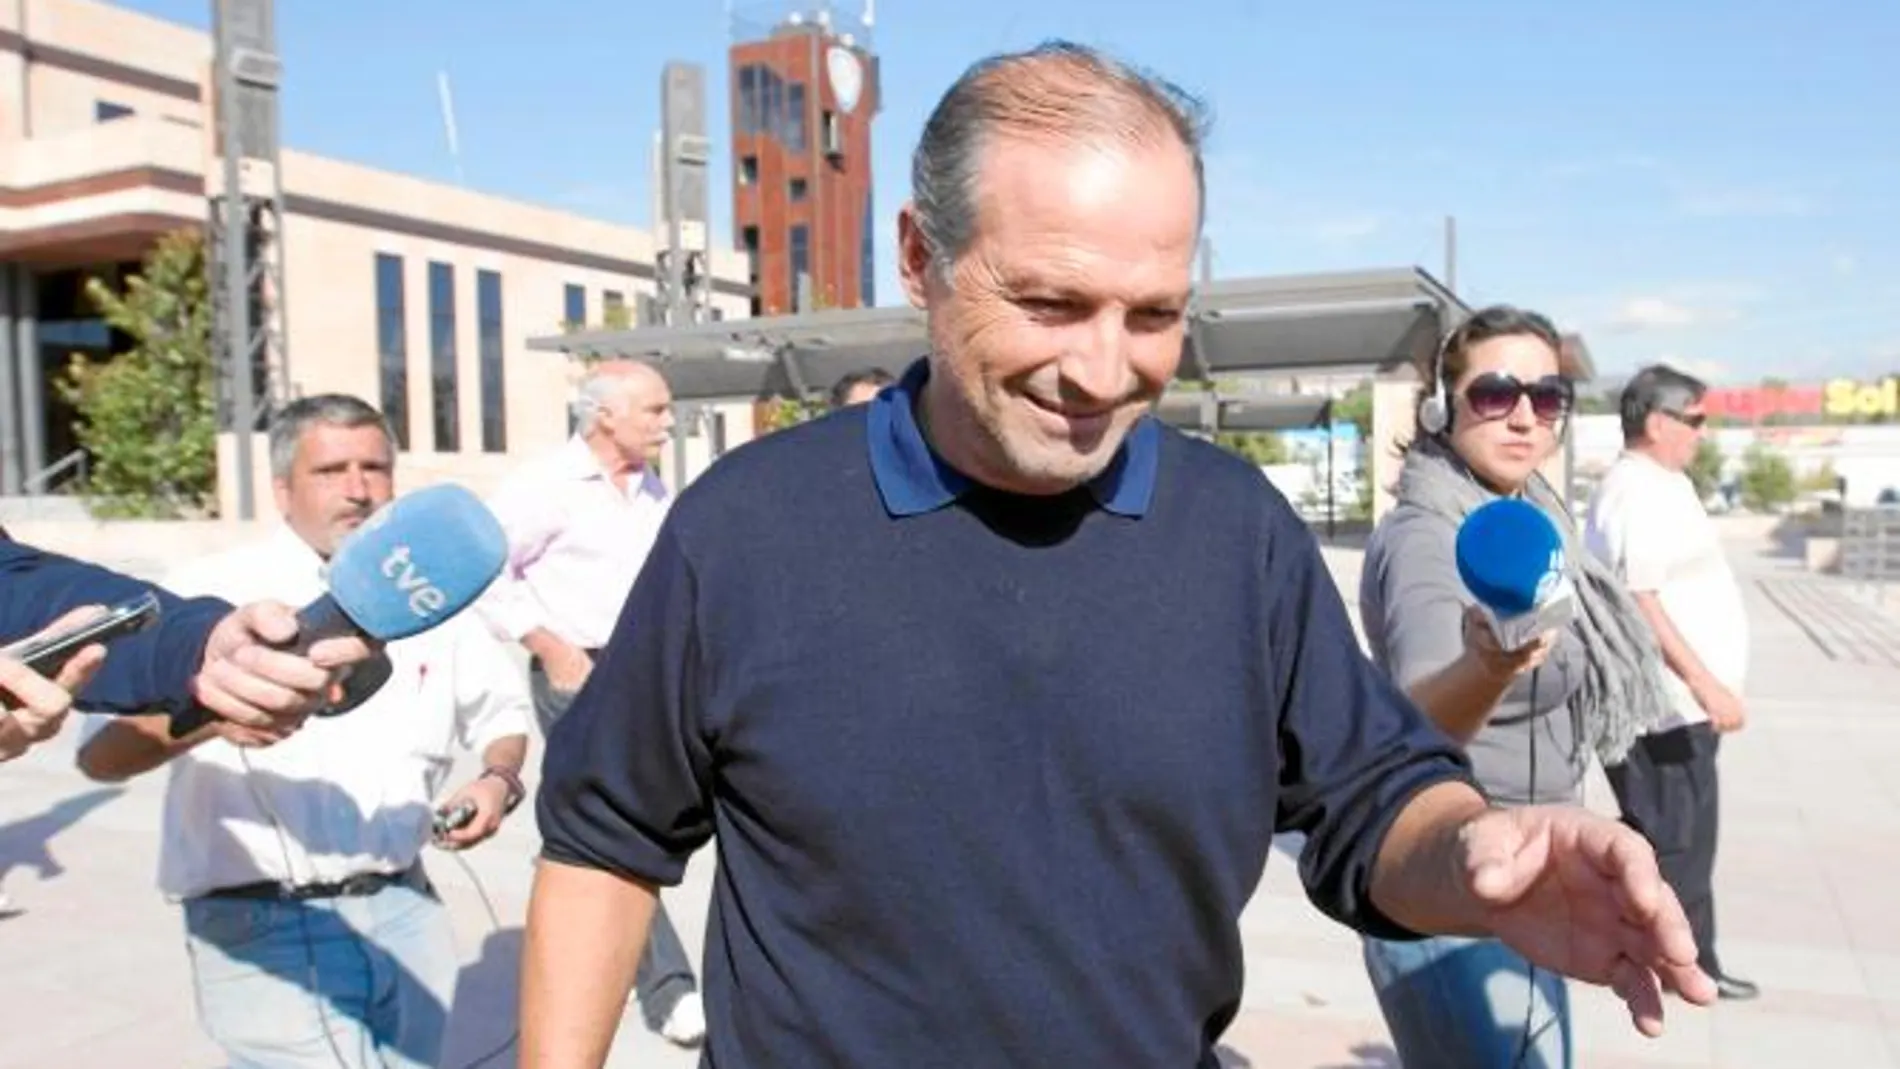 El ex alcalde de Ronda (Málaga), el socialista Antonio María Marín, acompañado de su abogado, sale en libertad bajo fianza del Palacio de Justicia